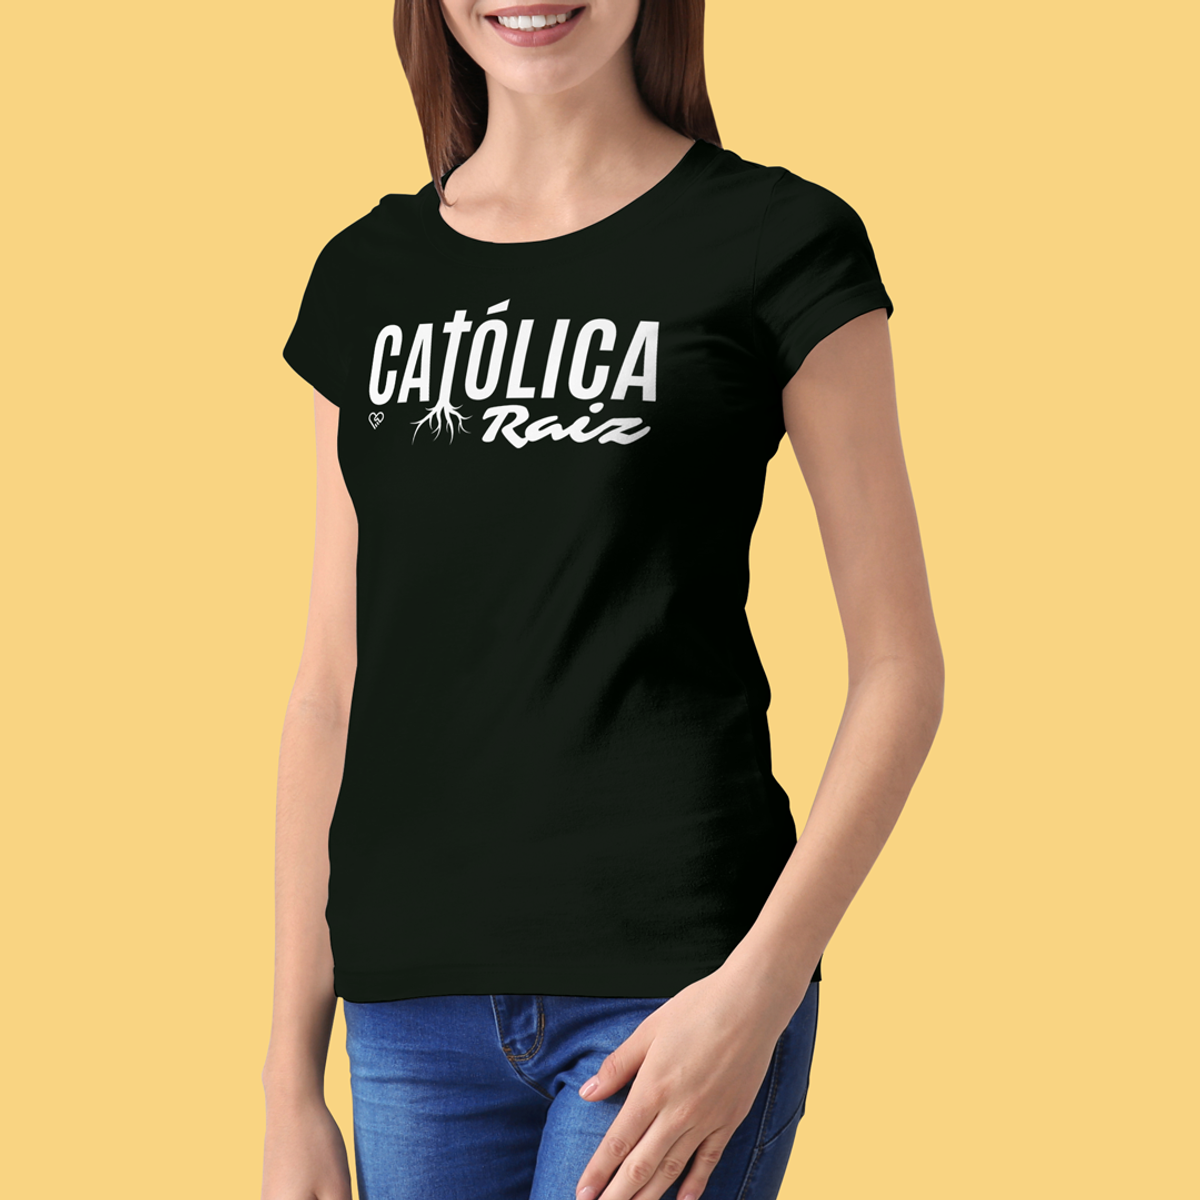 Nome do produto: Camiseta Católica Raiz - Feminina